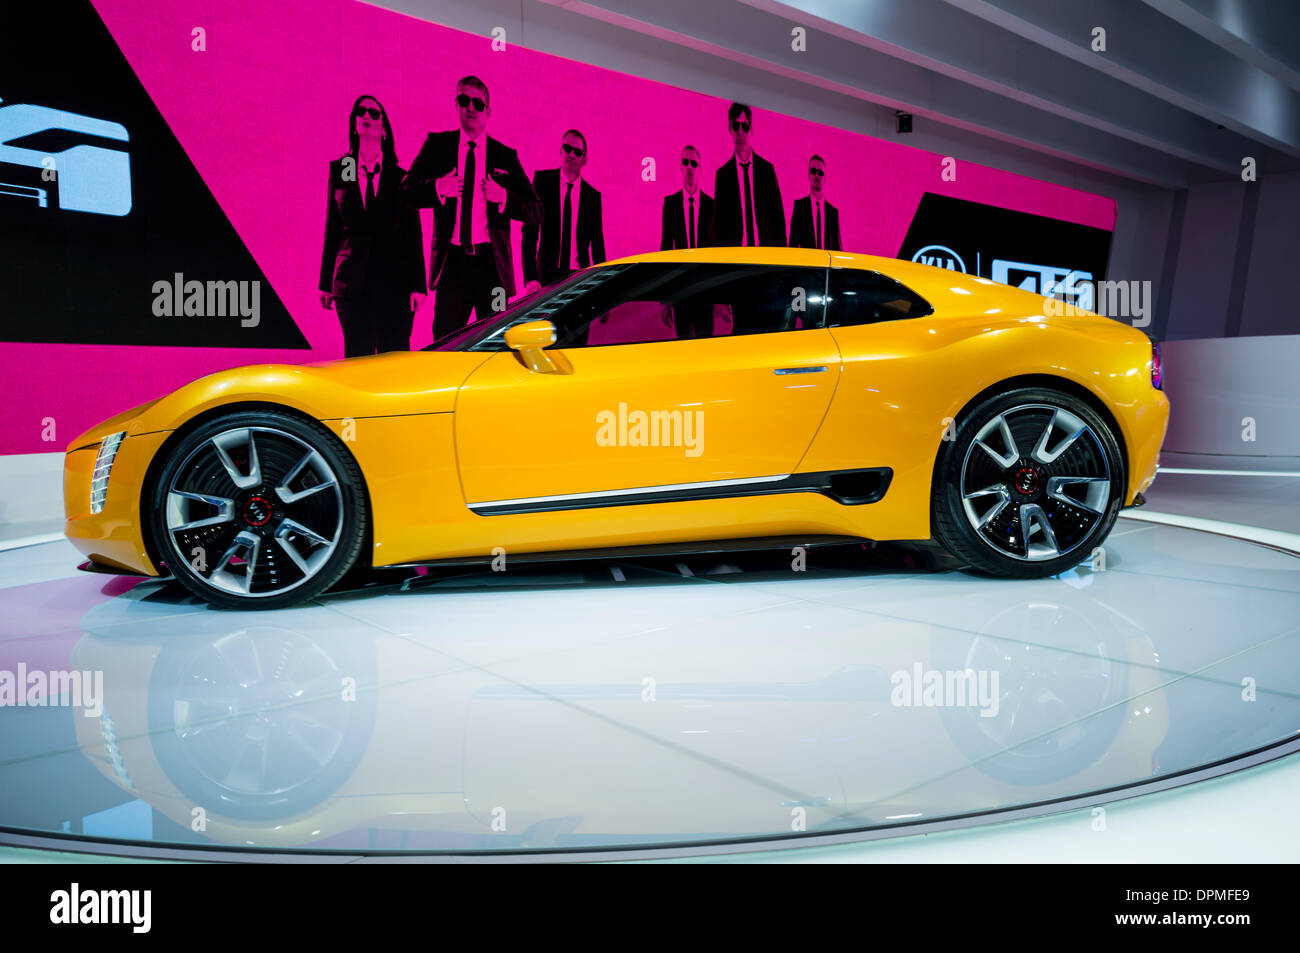 Detroit, Michigan, USA. 13 janvier 2014. North American International Auto Show, Kia GT4 Stinger concept au Salon de l'auto de Detroit 2014. Crédit : Joseph Heroun/Alamy Live News Banque D'Images